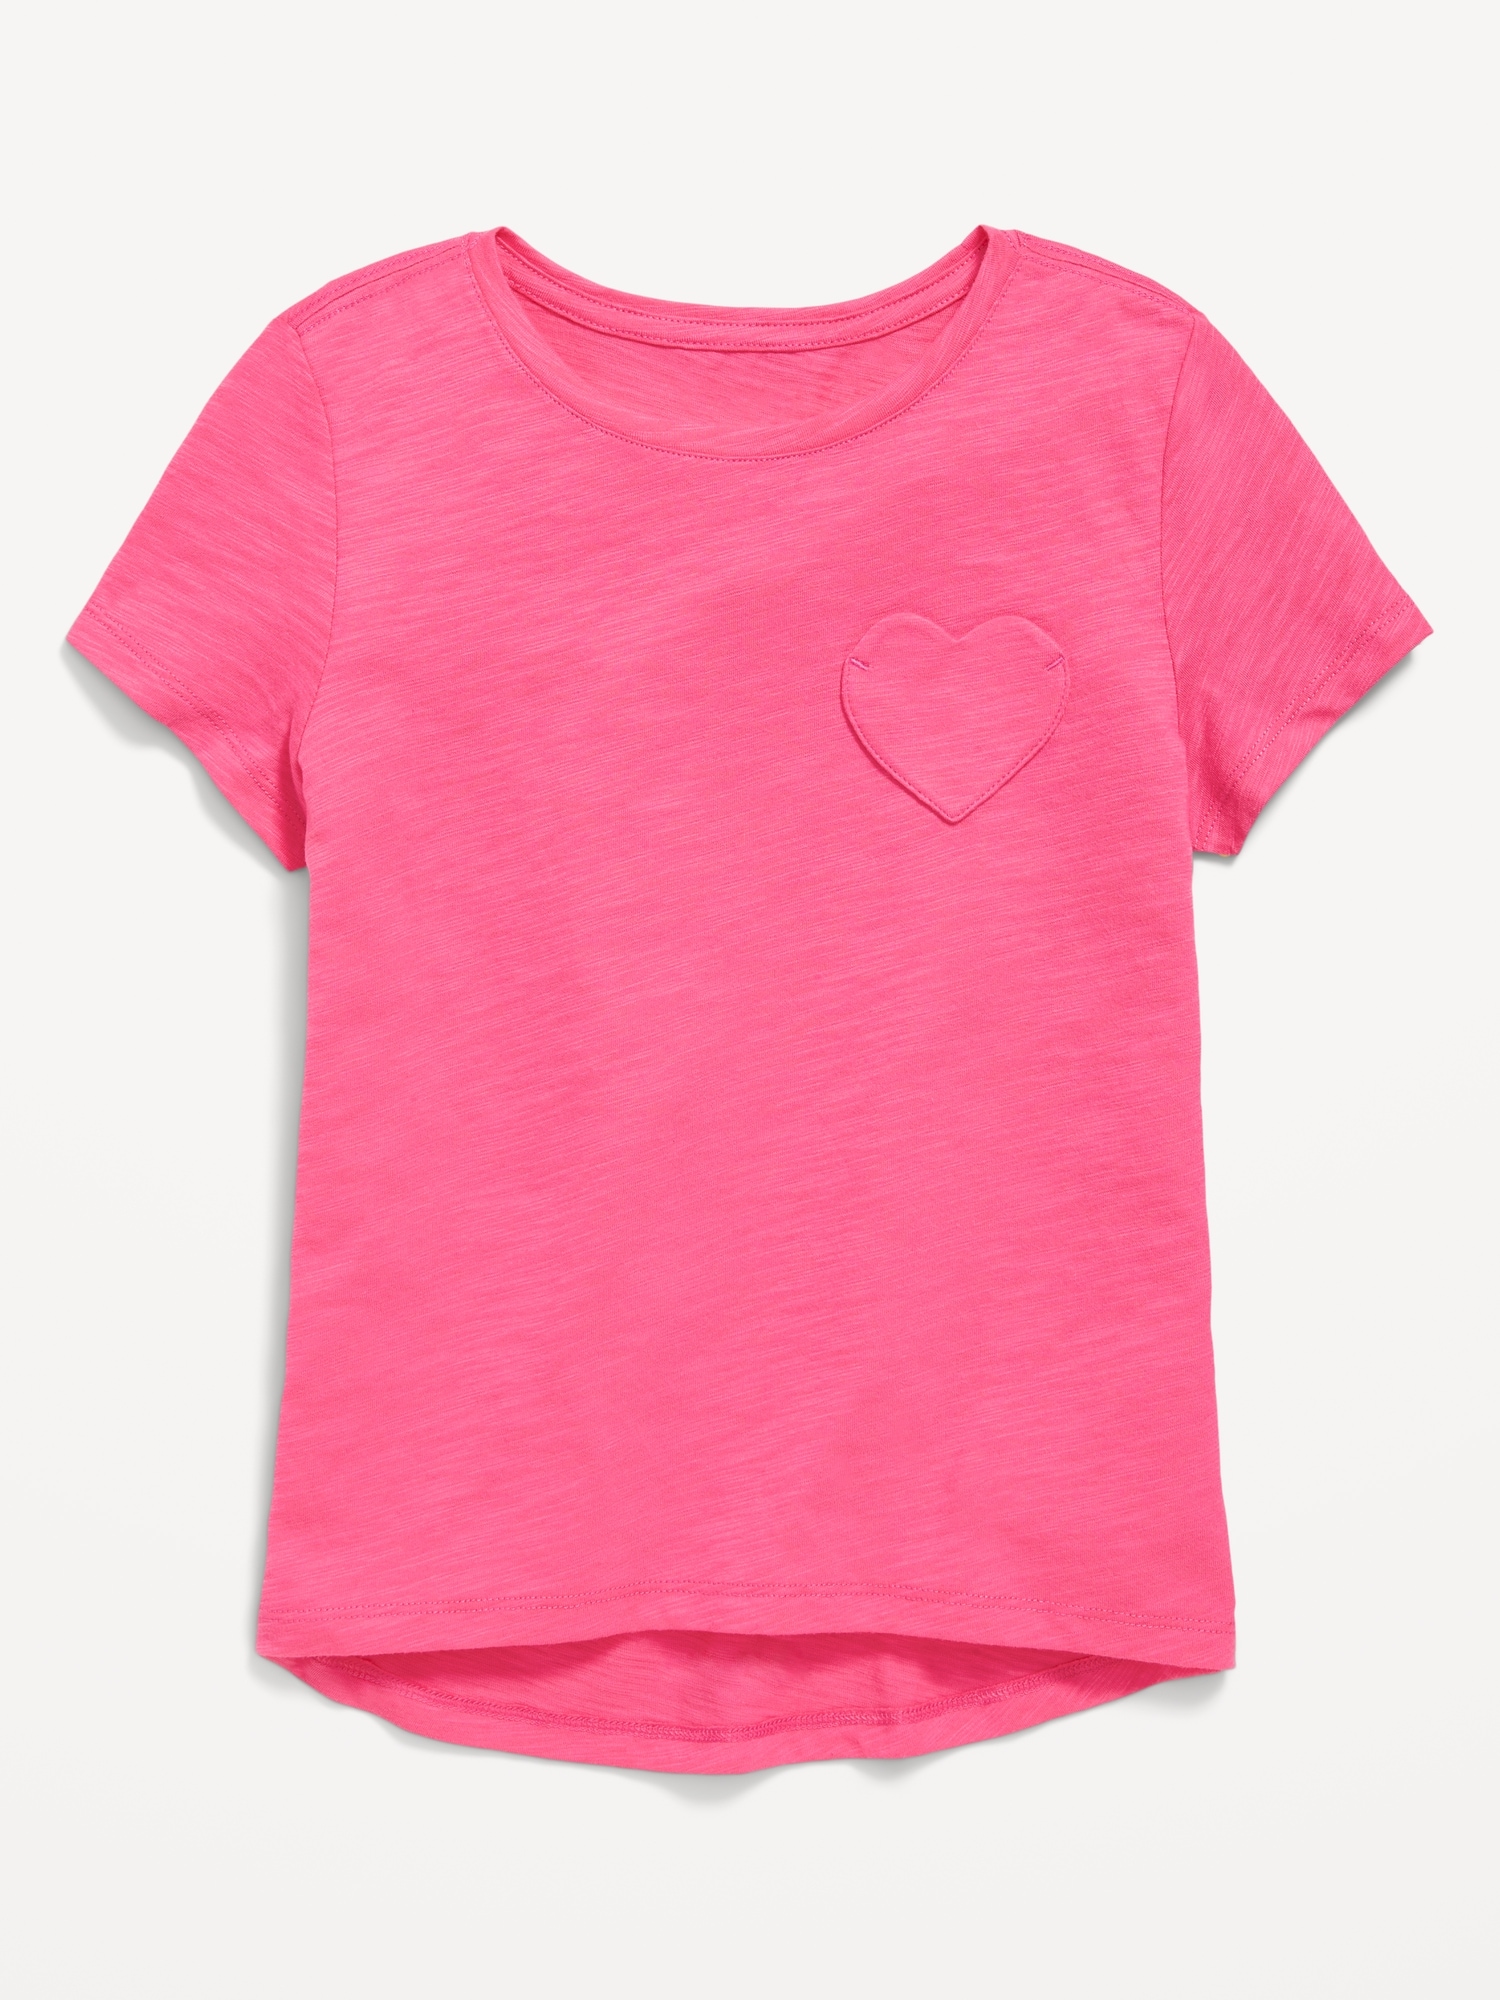 Softest Heart-Pocket T-Shirt for Girls